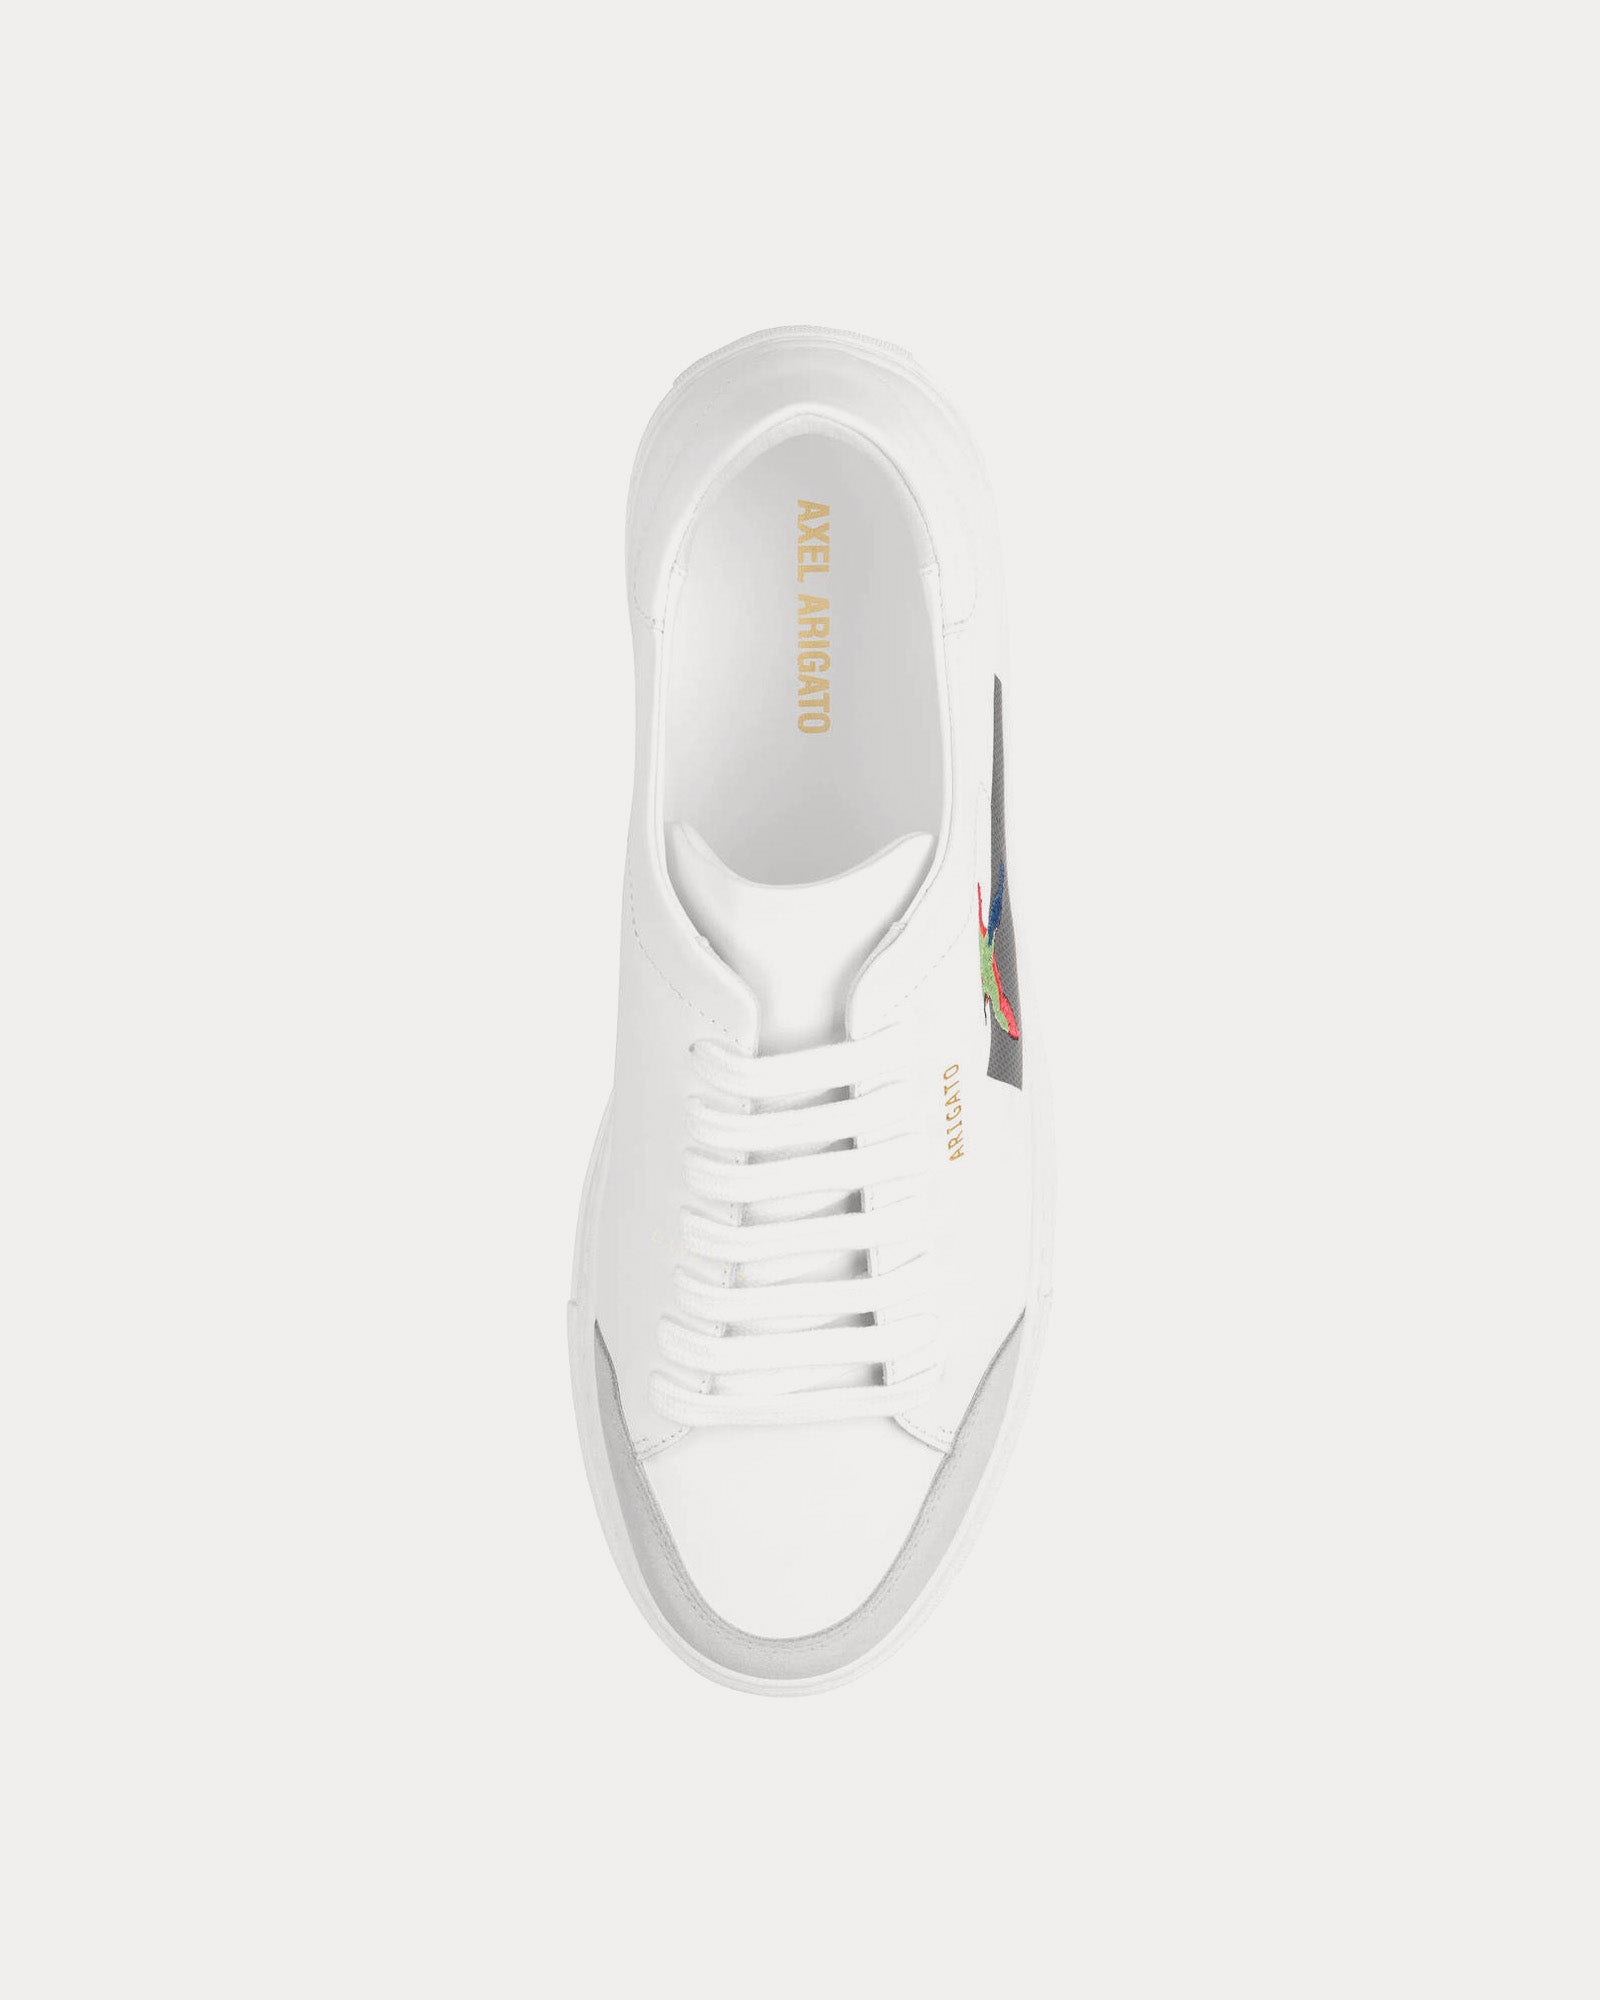 Axel Arigato - Clean 90 Bird White / White Low Top Sneakers